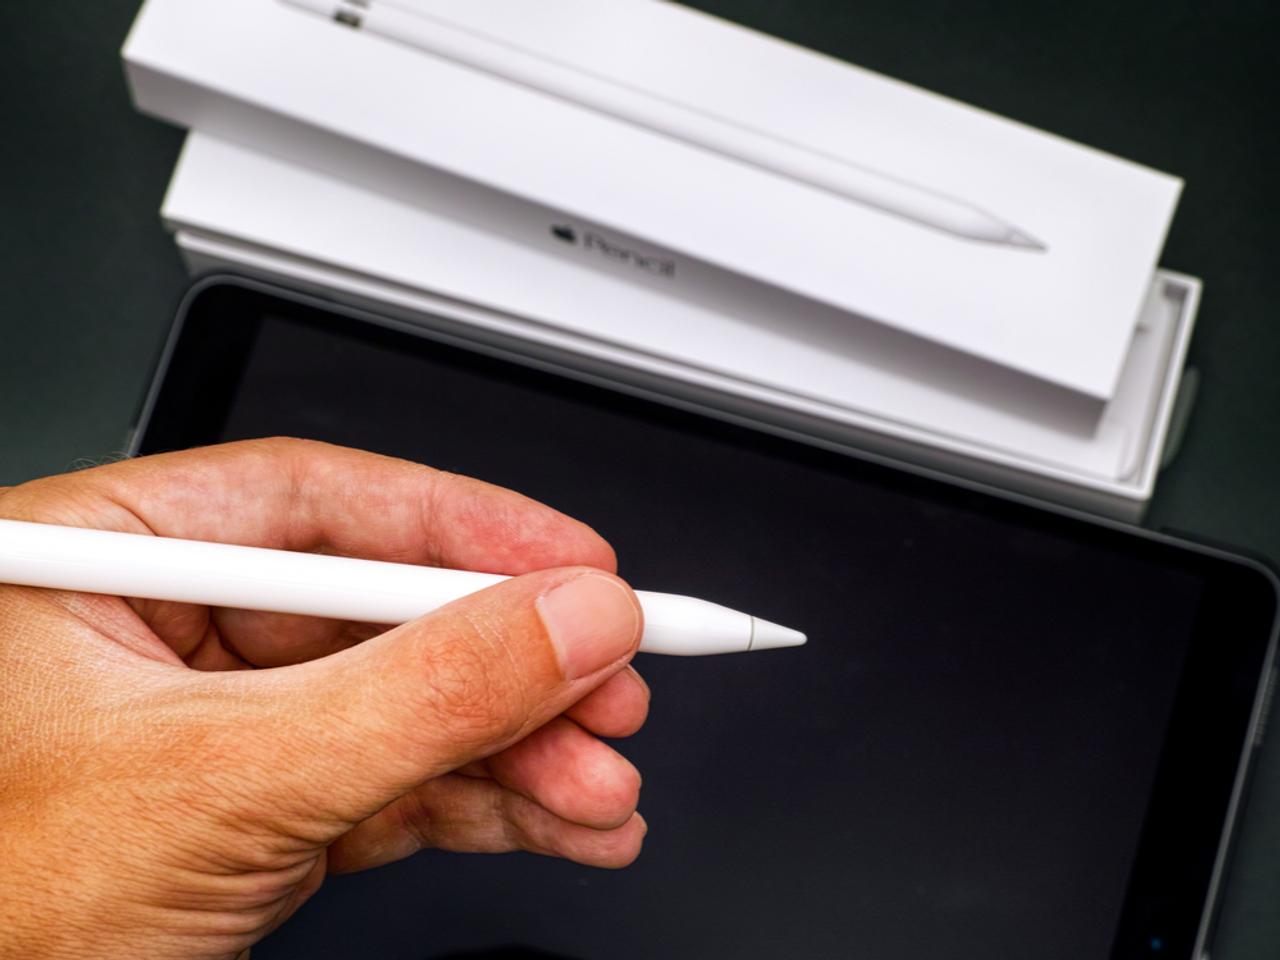 ｢廉価版iPad｣はApple Pencil対応との予測。将来的にはiPhoneにも対応するかも！